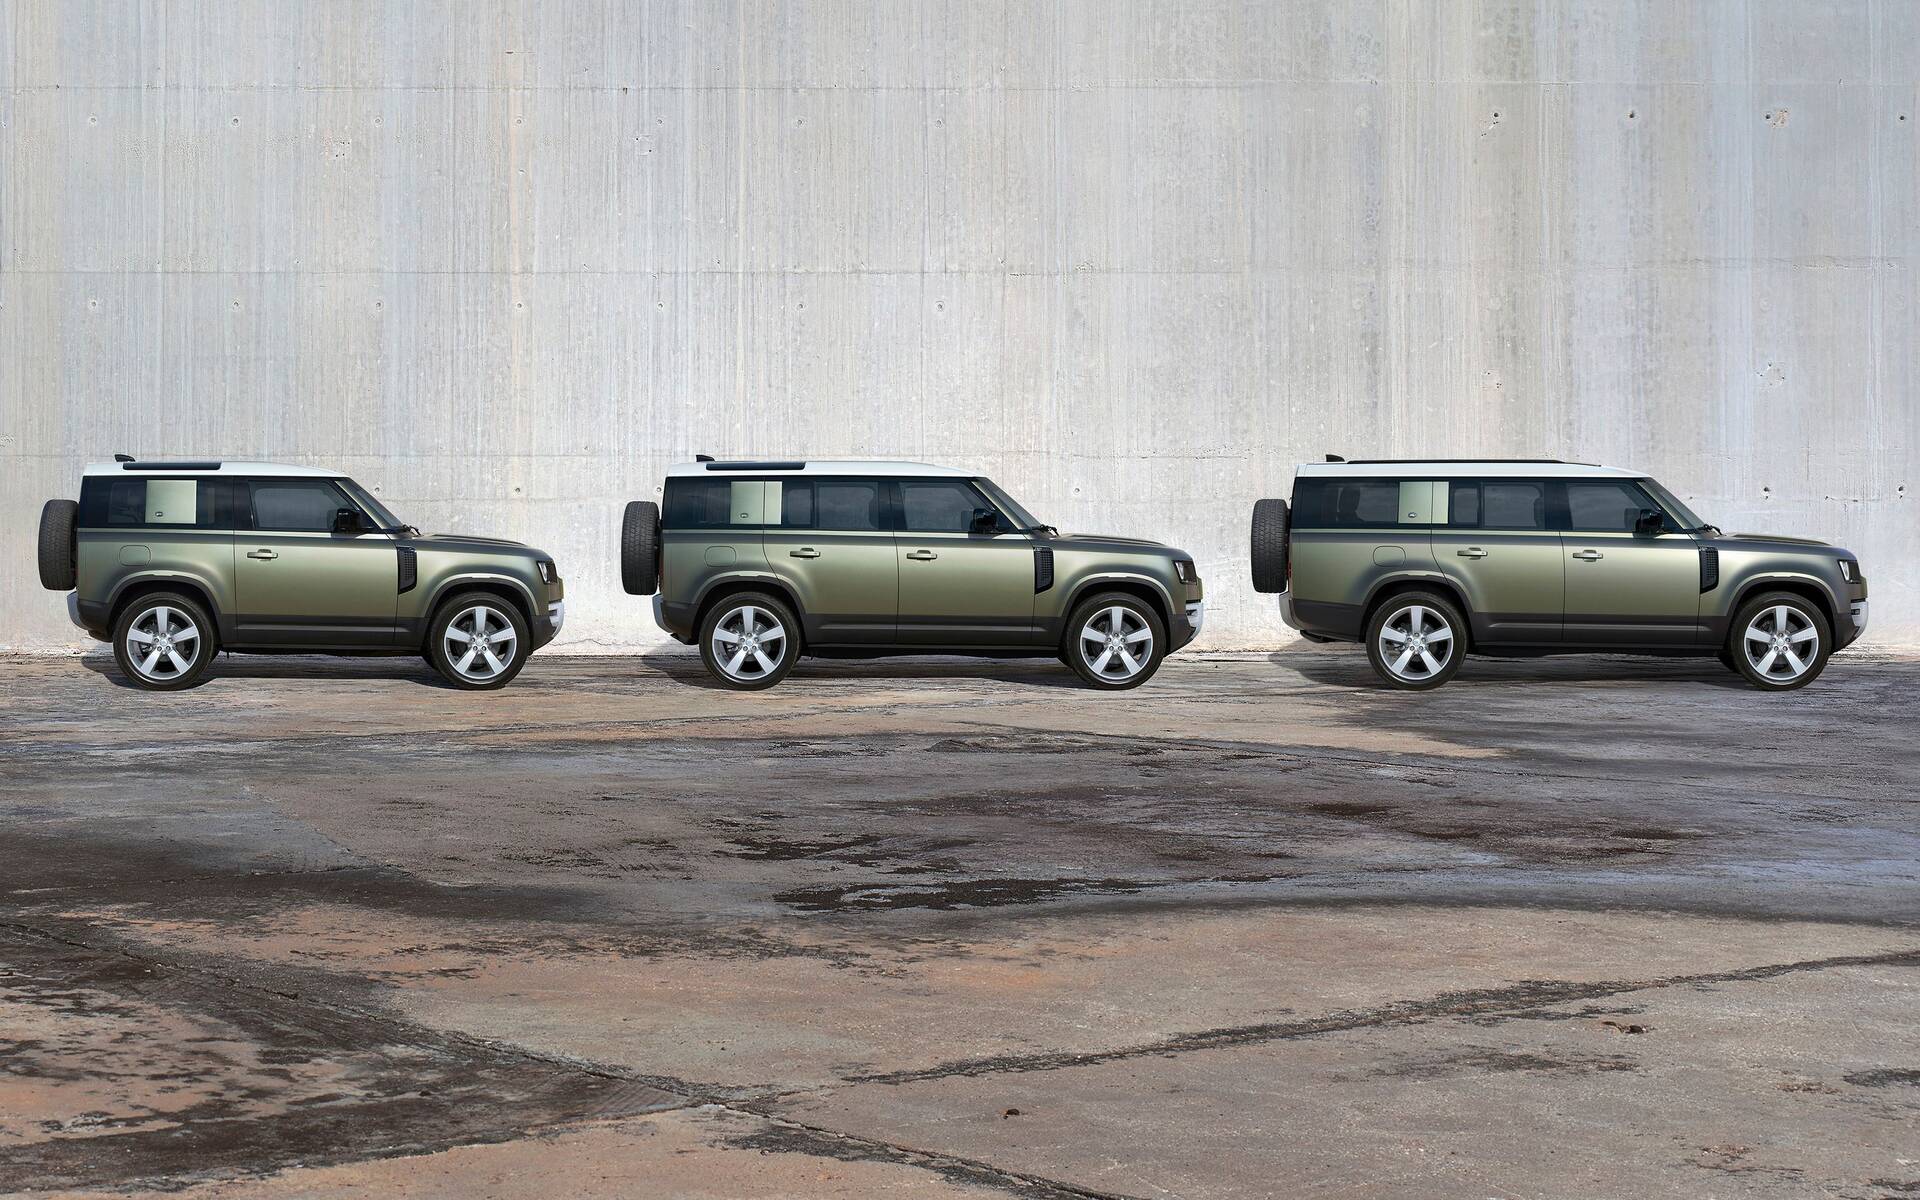 Le Land Rover Defender 130 à trois rangées est arrivé 526221-le-land-rover-defender-130-a-trois-rangees-est-arrive